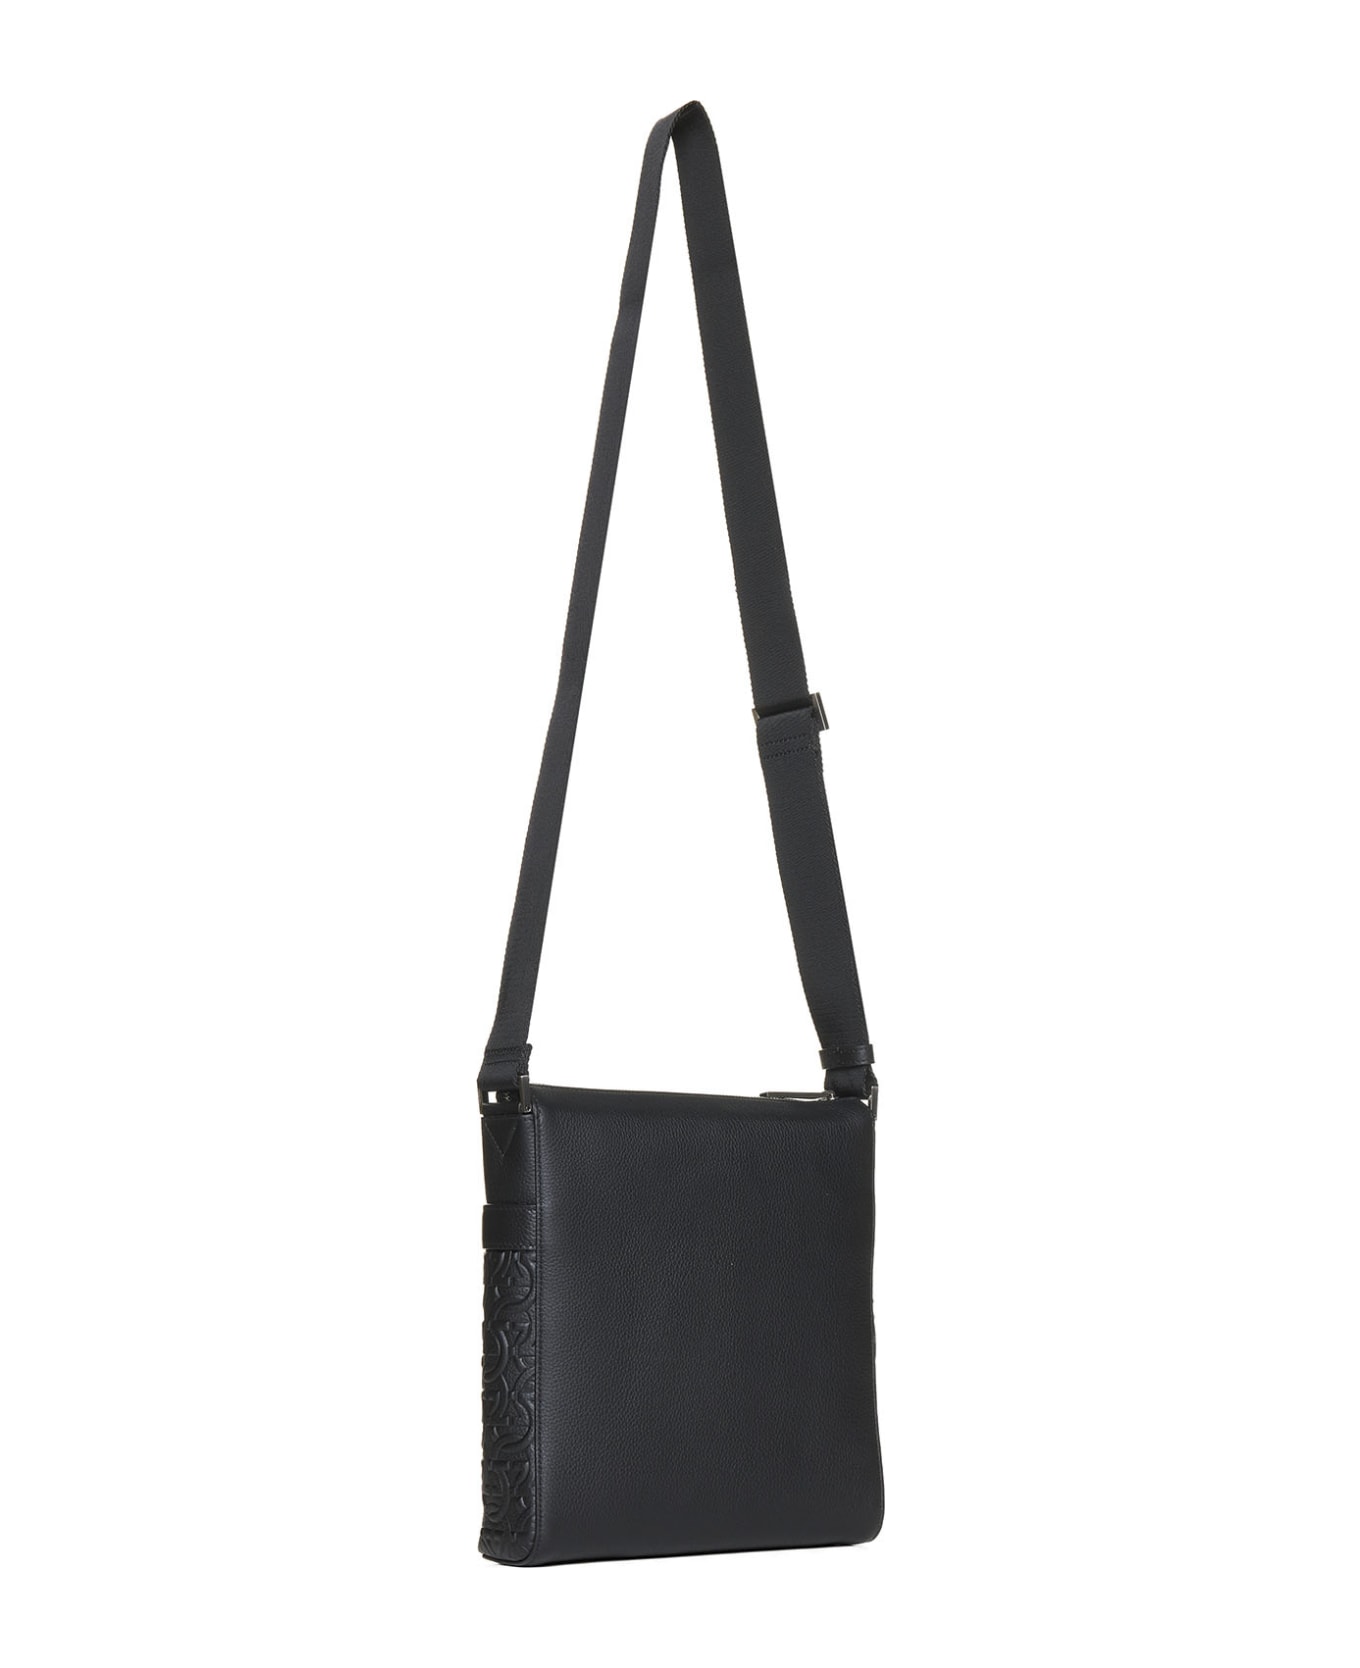 Ferragamo Shoulder Bag - The Colden Duffle Bag